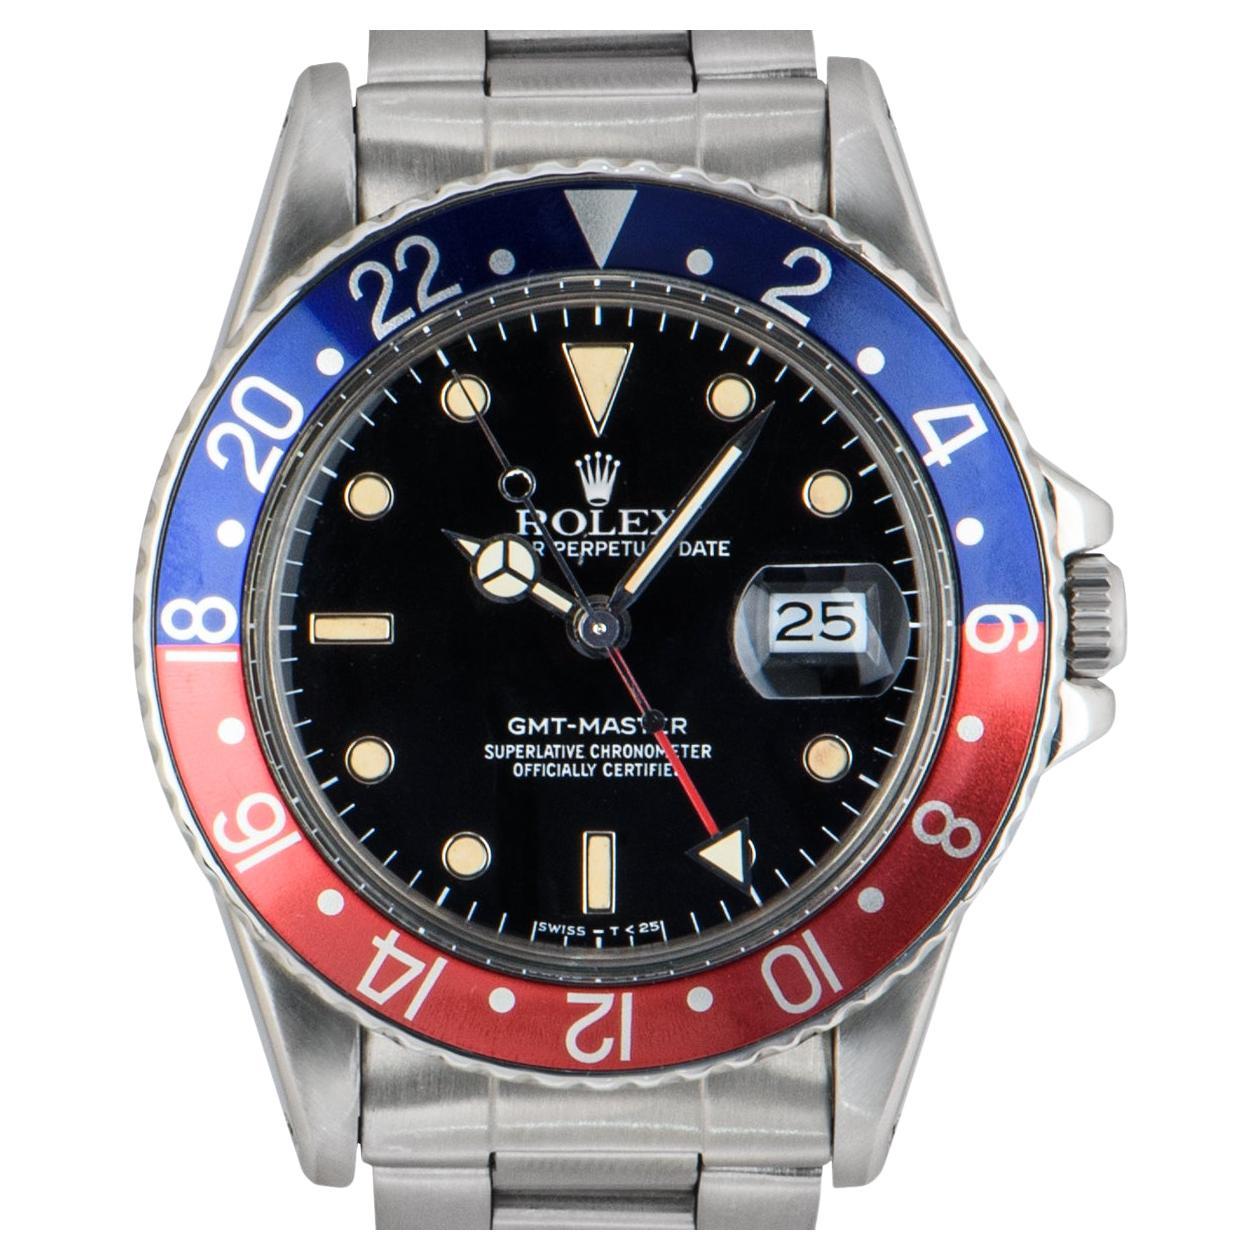 Montre-bracelet GMT-Master Vintage en acier inoxydable, cadran noir avec index appliqués, date à 3 heures, lunette tournante bidirectionnelle en acier inoxydable avec insert bleu et rouge 